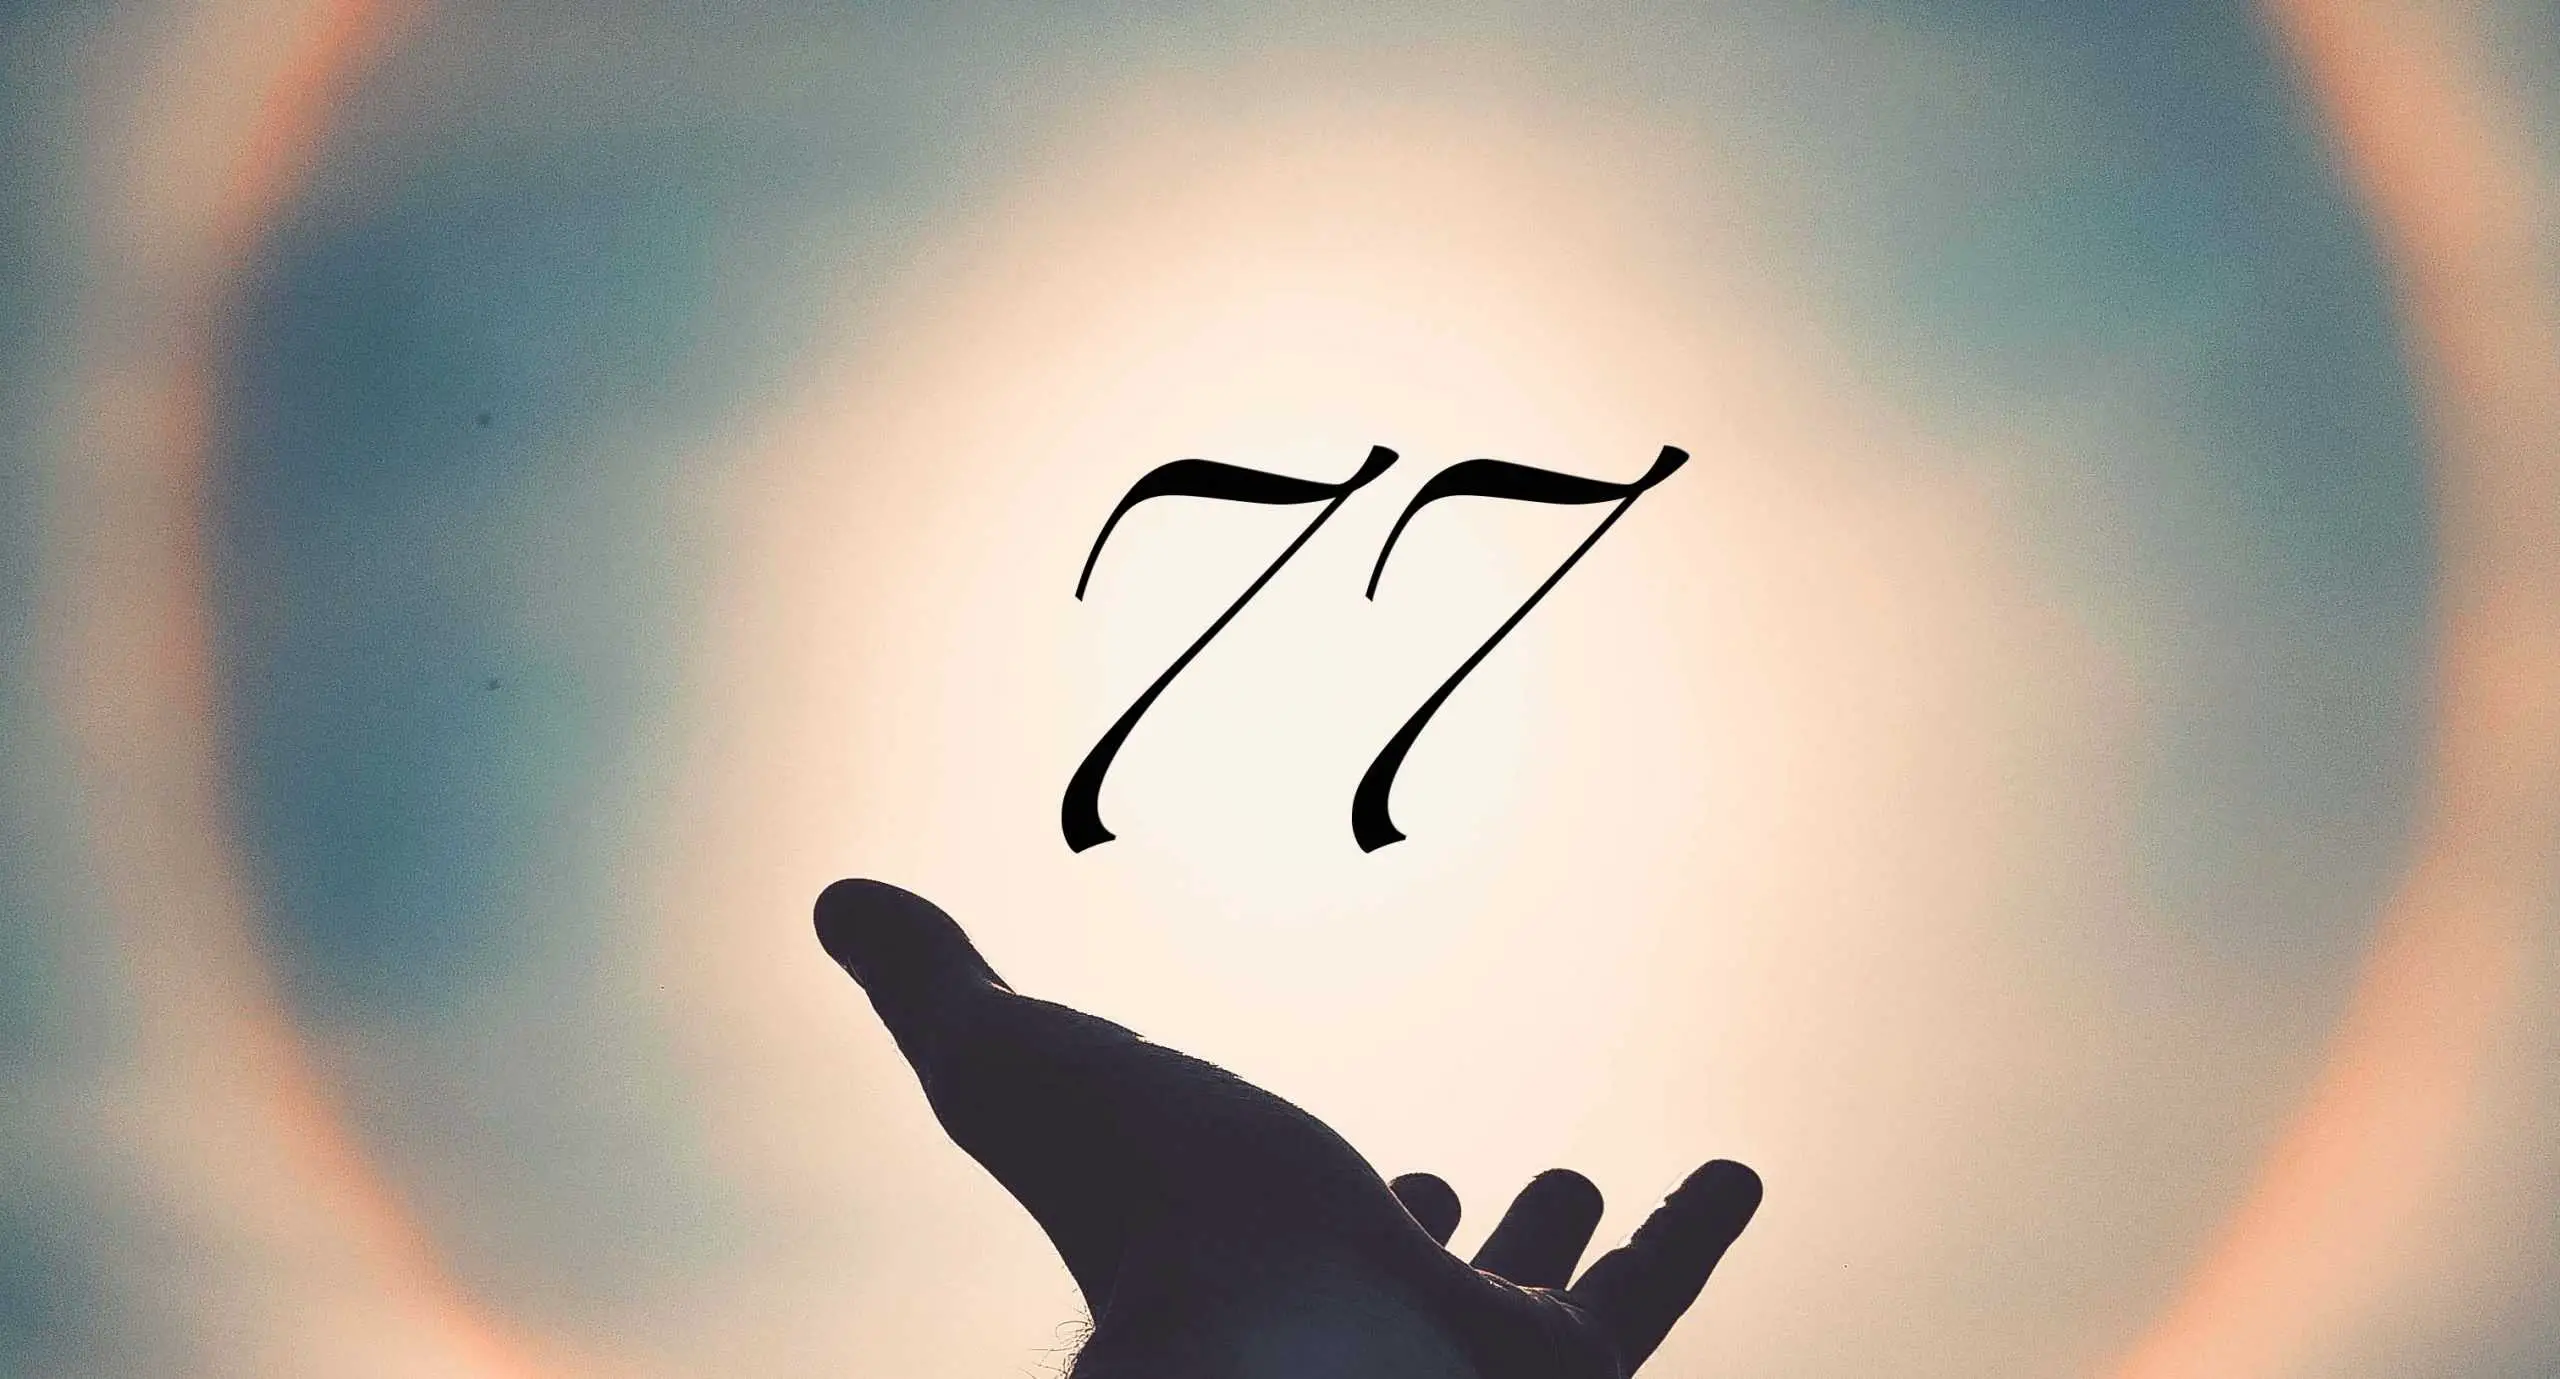 Signification du nombre 77